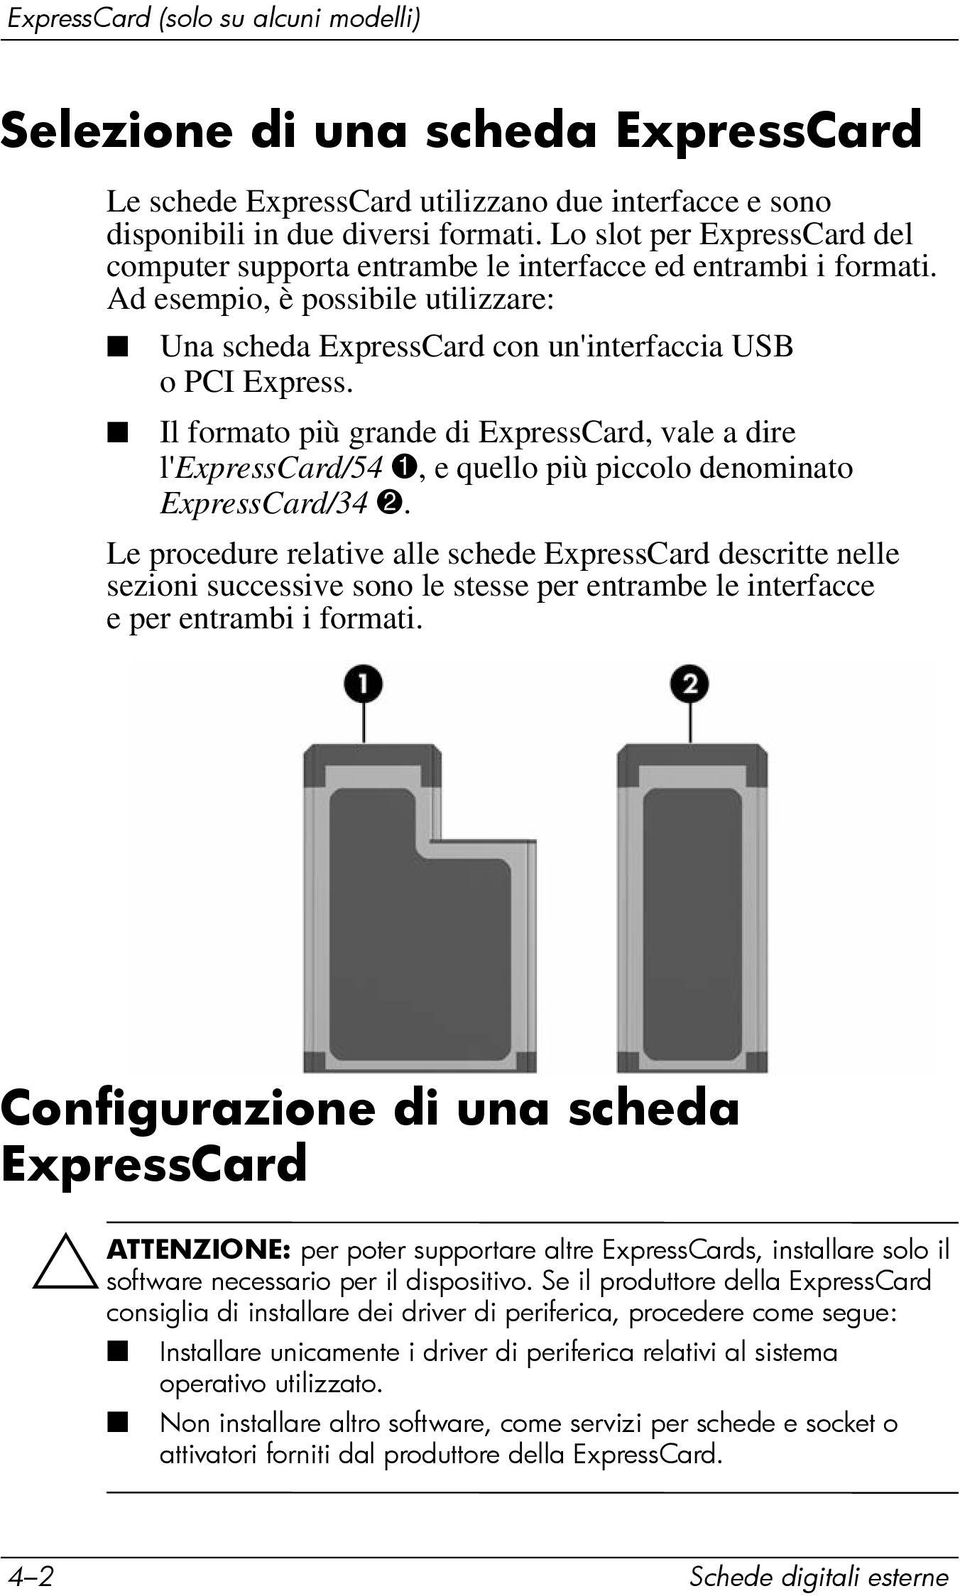 Il formato più grande di ExpressCard, vale a dire l'expresscard/54 1, e quello più piccolo denominato ExpressCard/34 2.